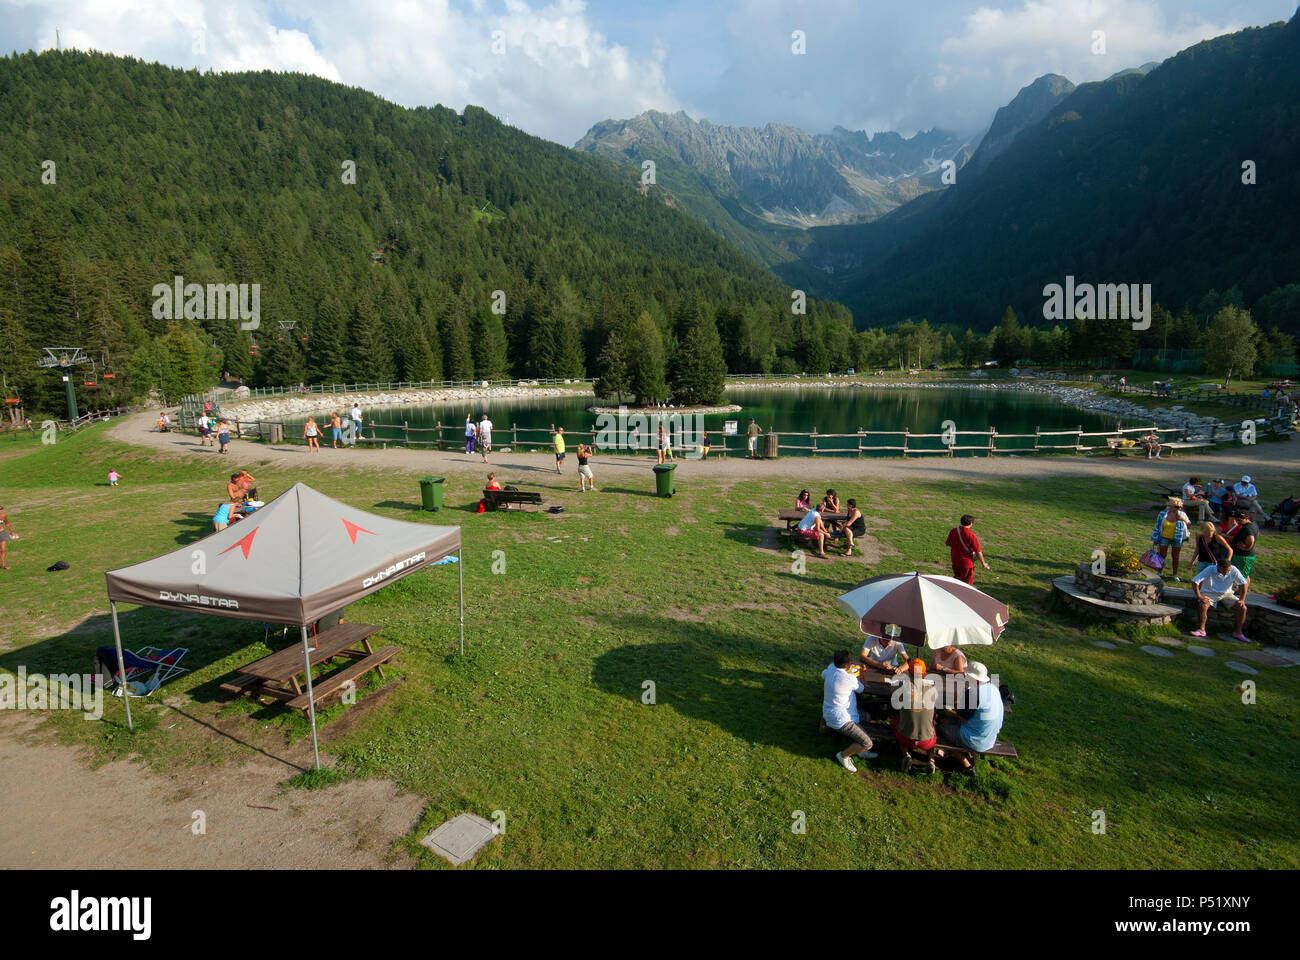 Picnic area near Lake of Valbione, Adamello Regional Park, Ponte di Legno, Lombardy, Italy Stock Photo